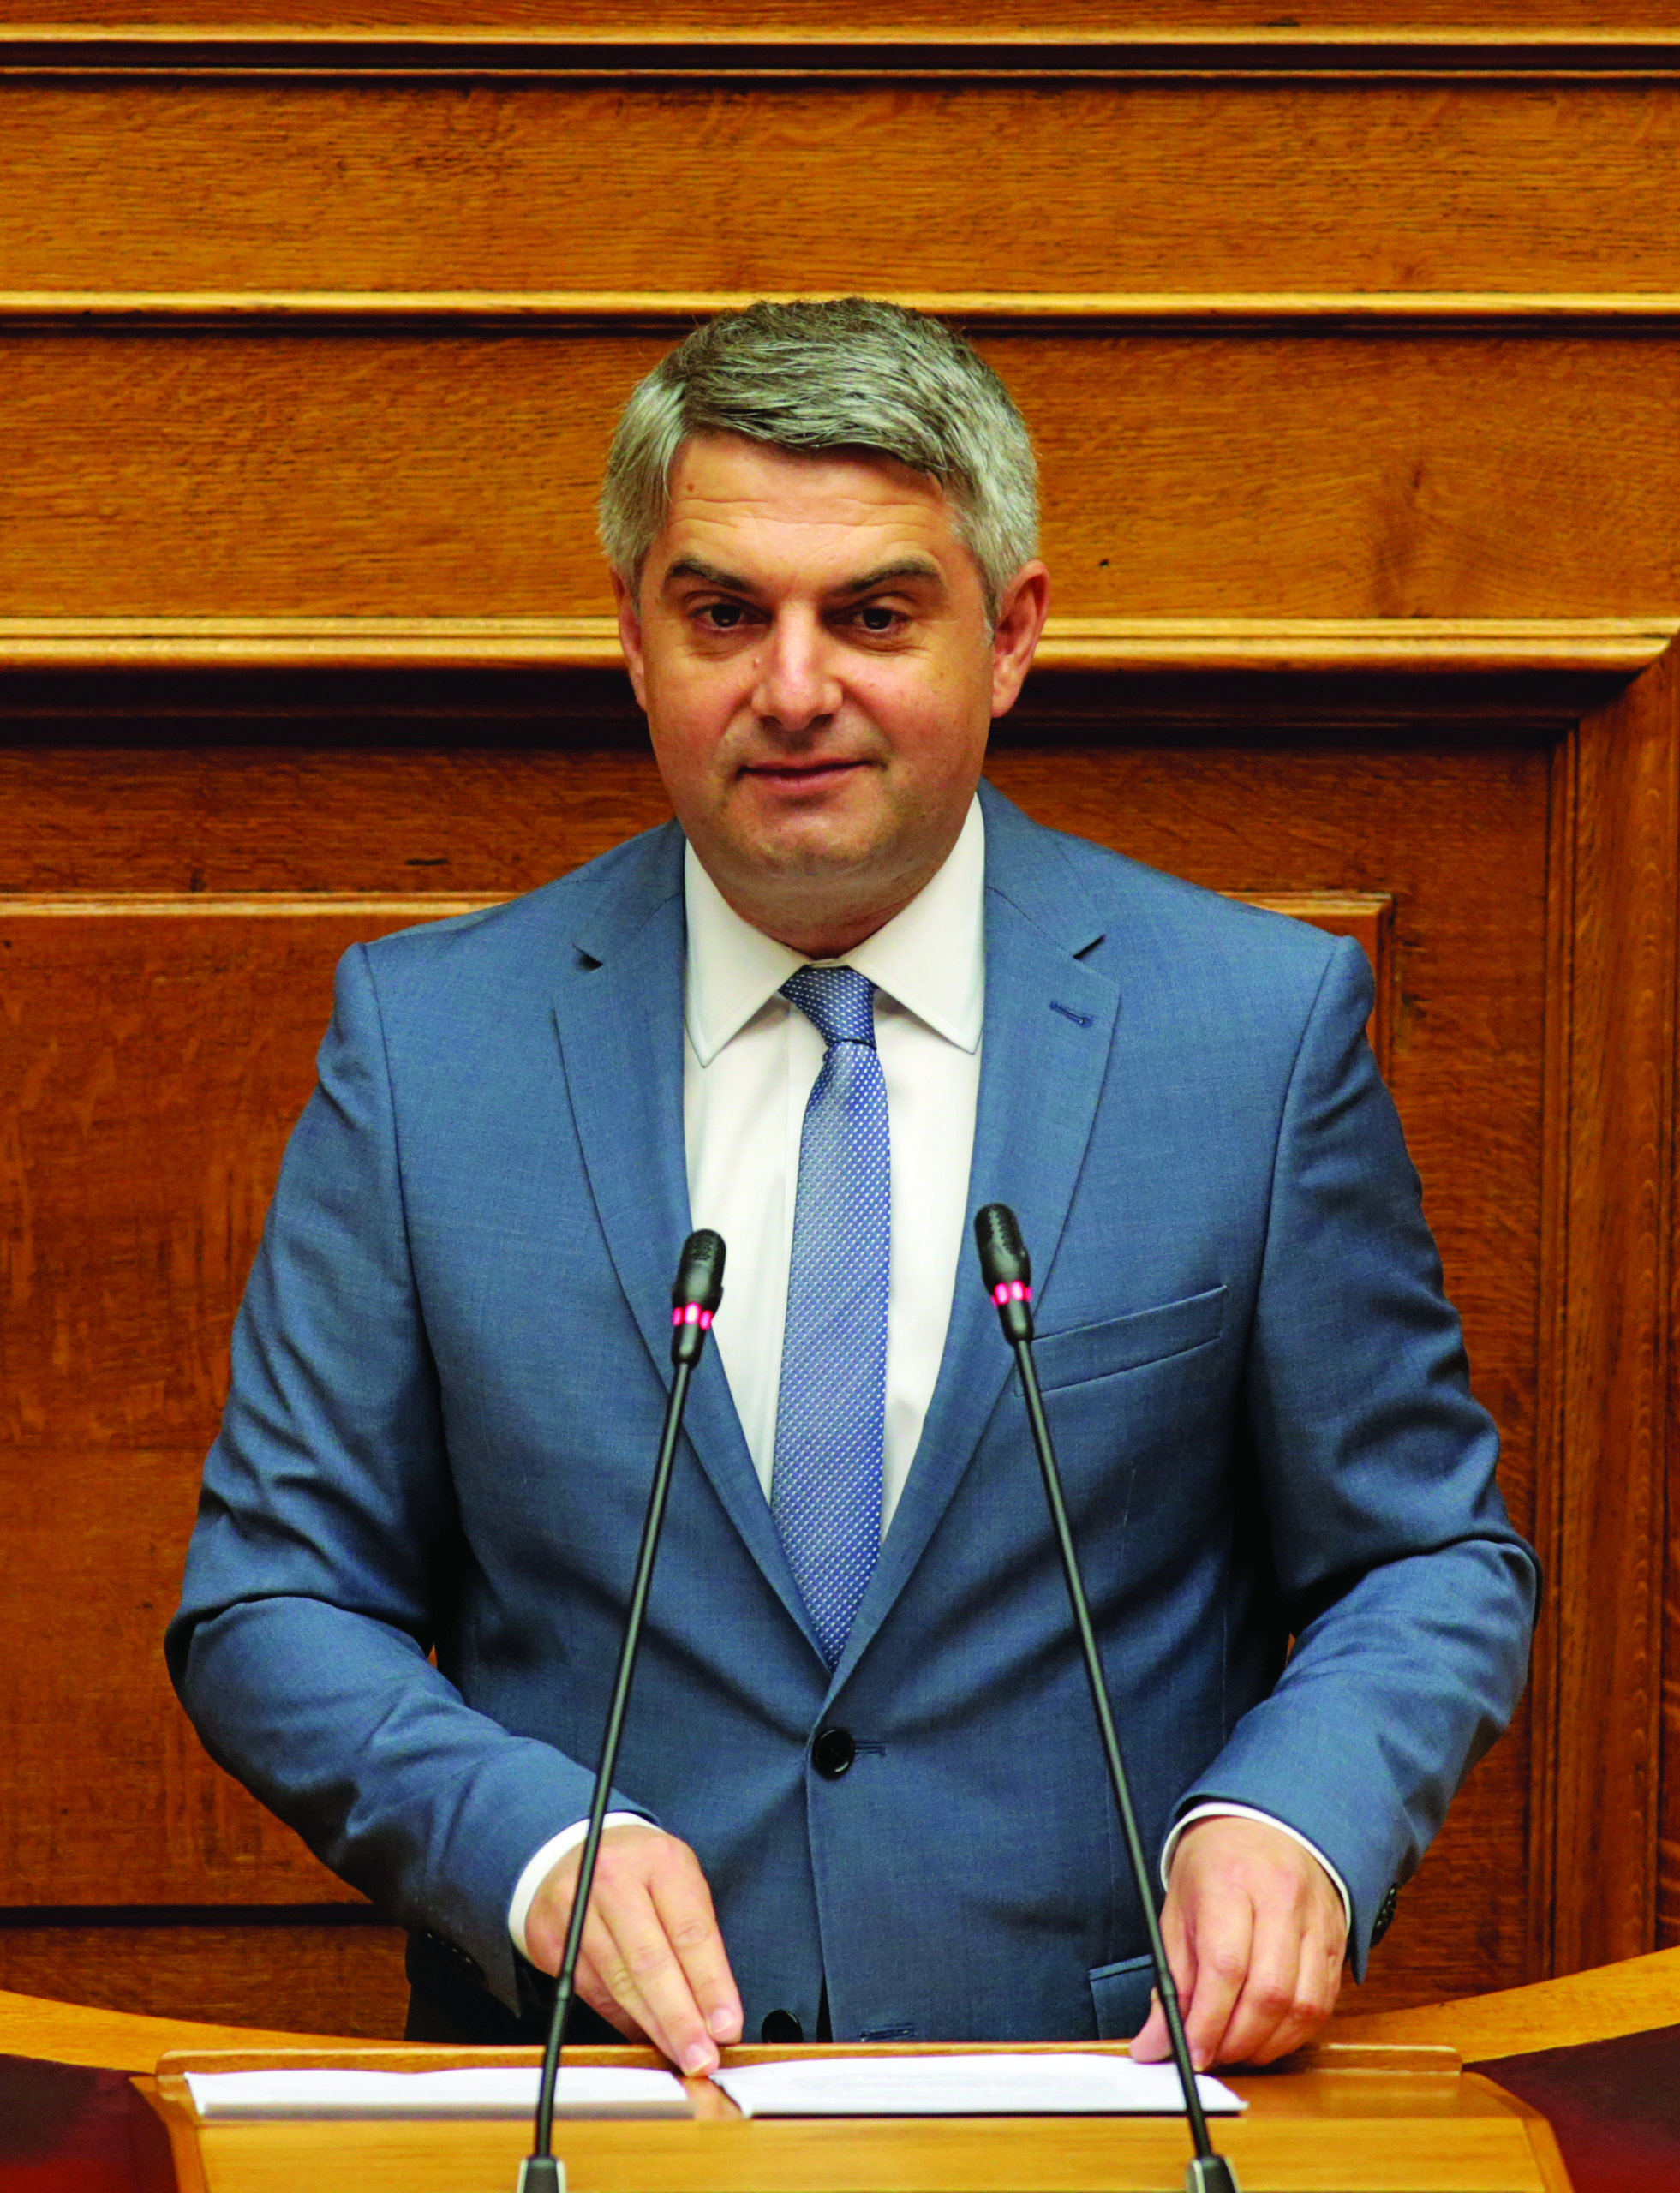 Οδυσσέας Κωνσταντινόπουλος: Η πολυφωνική κυβέρνηση προκαλεί σύγχυση